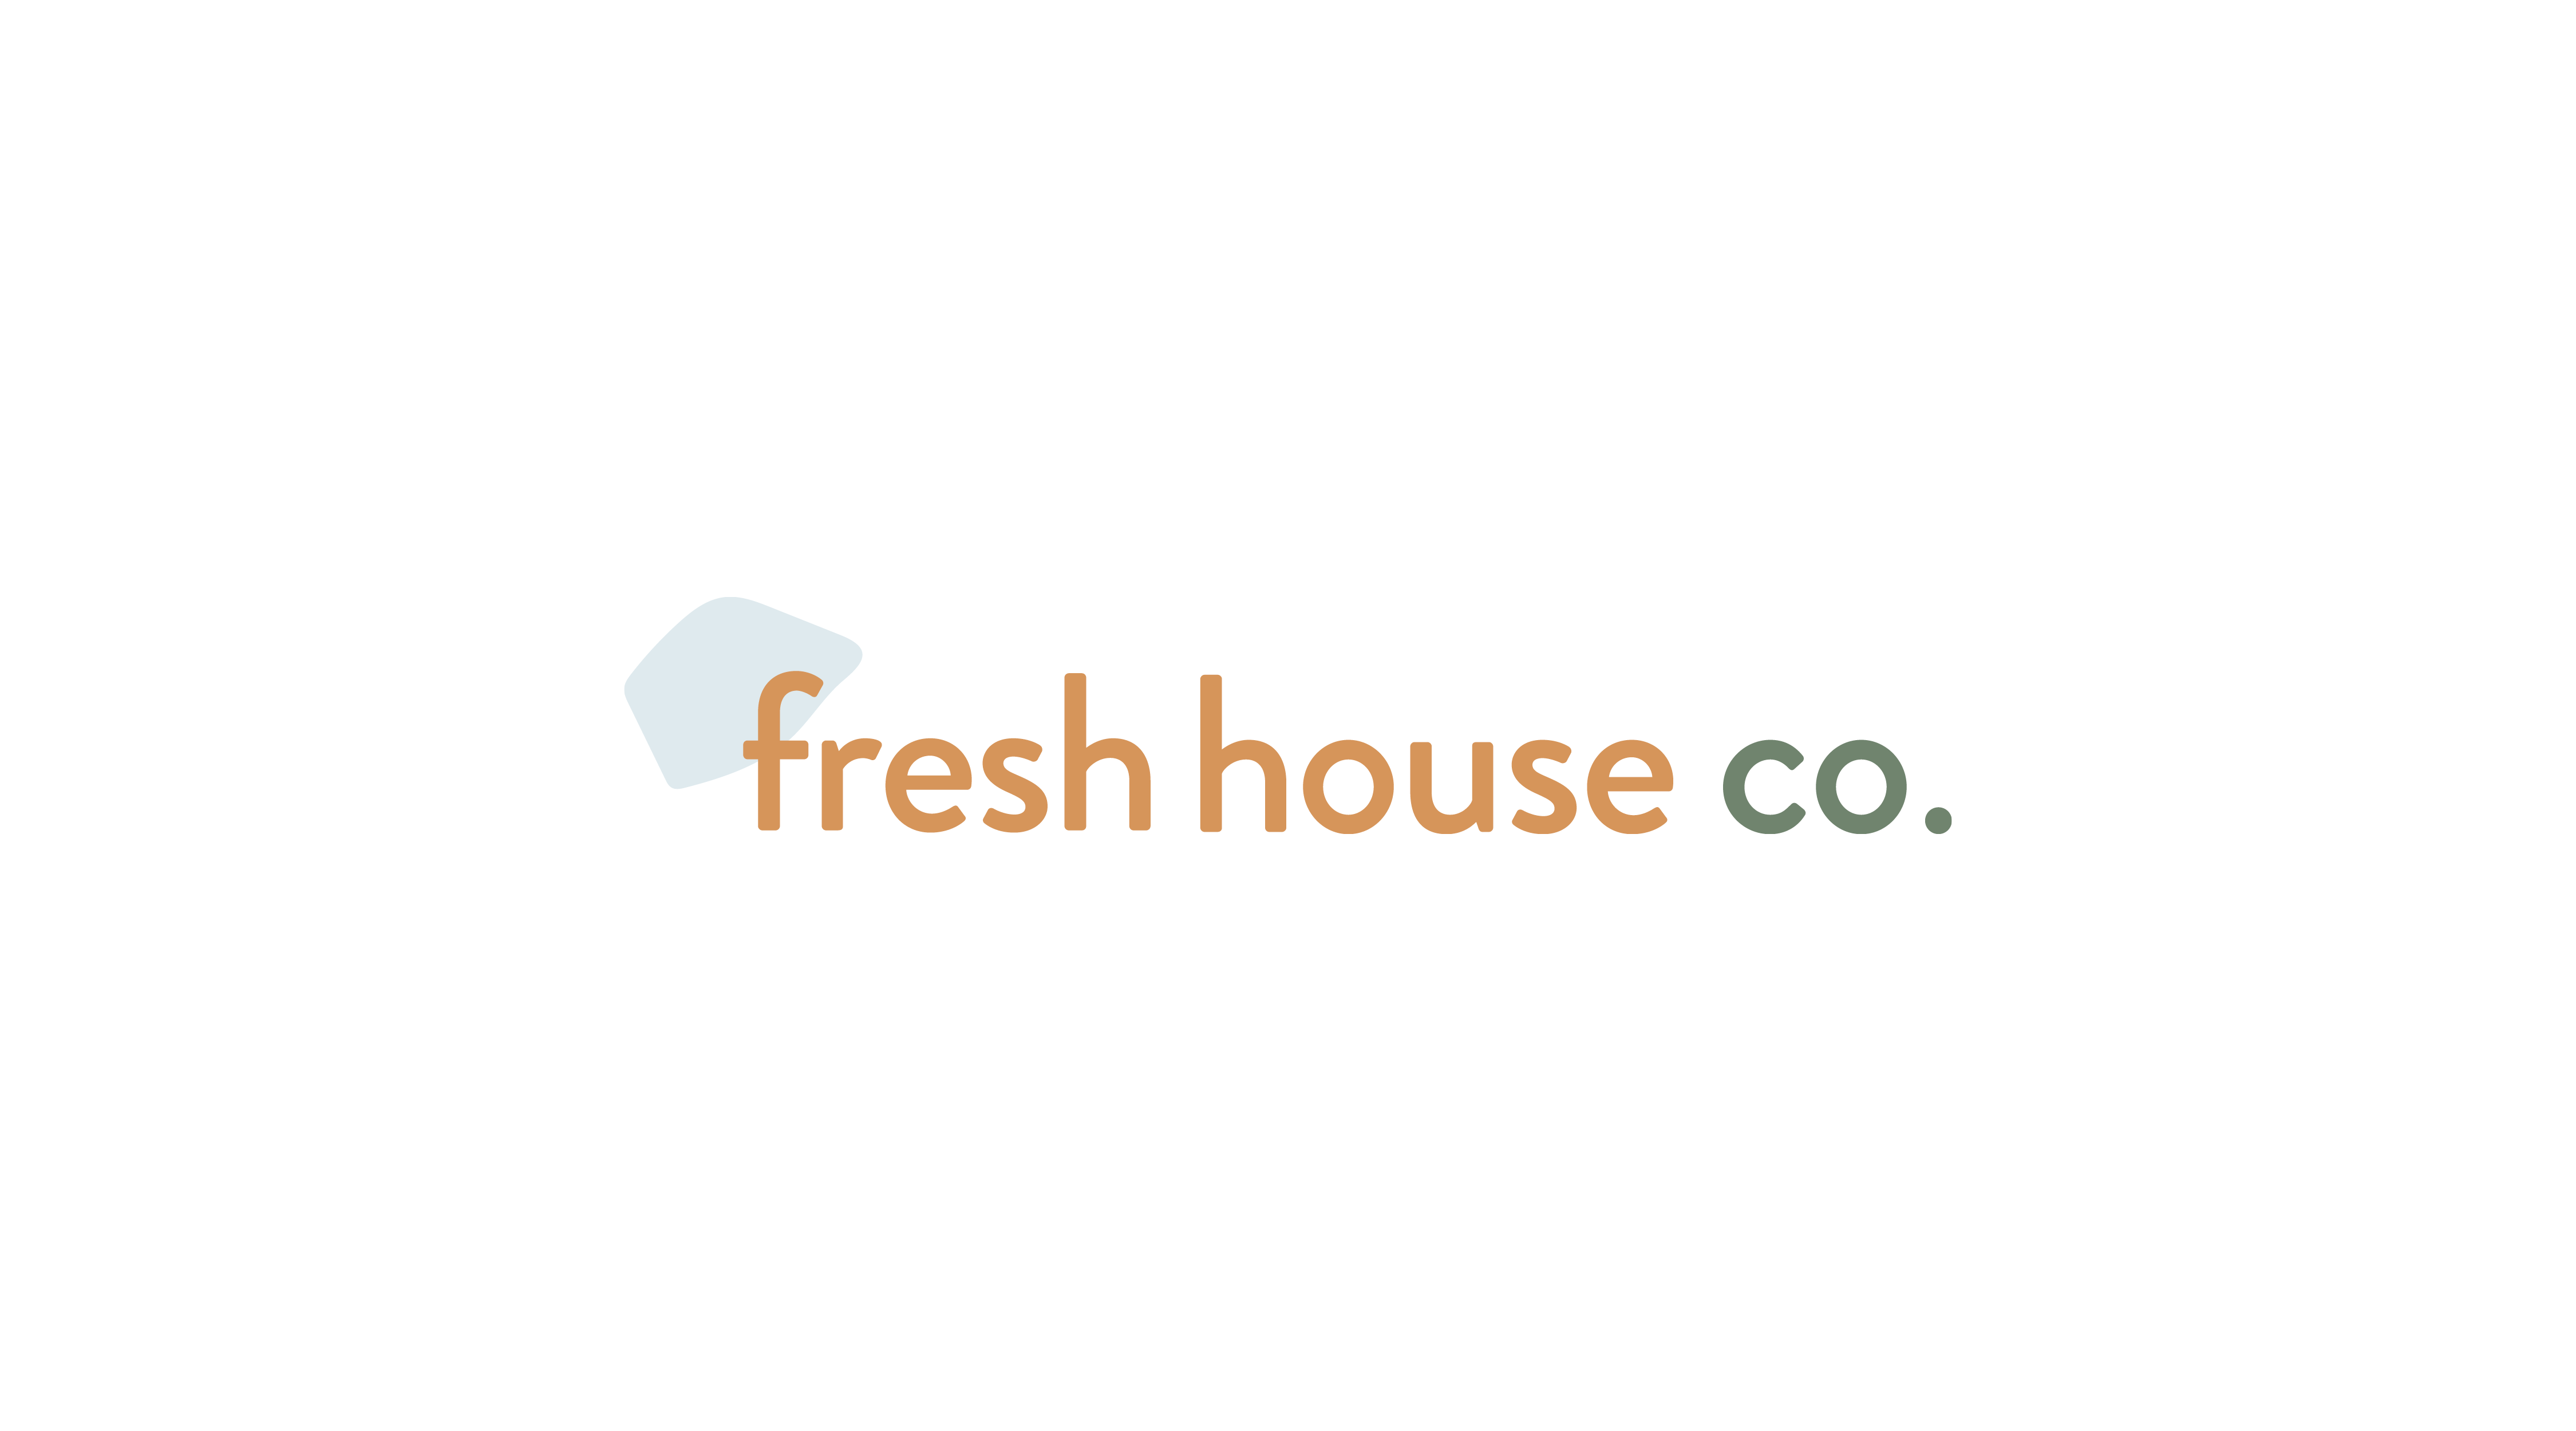 fresh house co branding